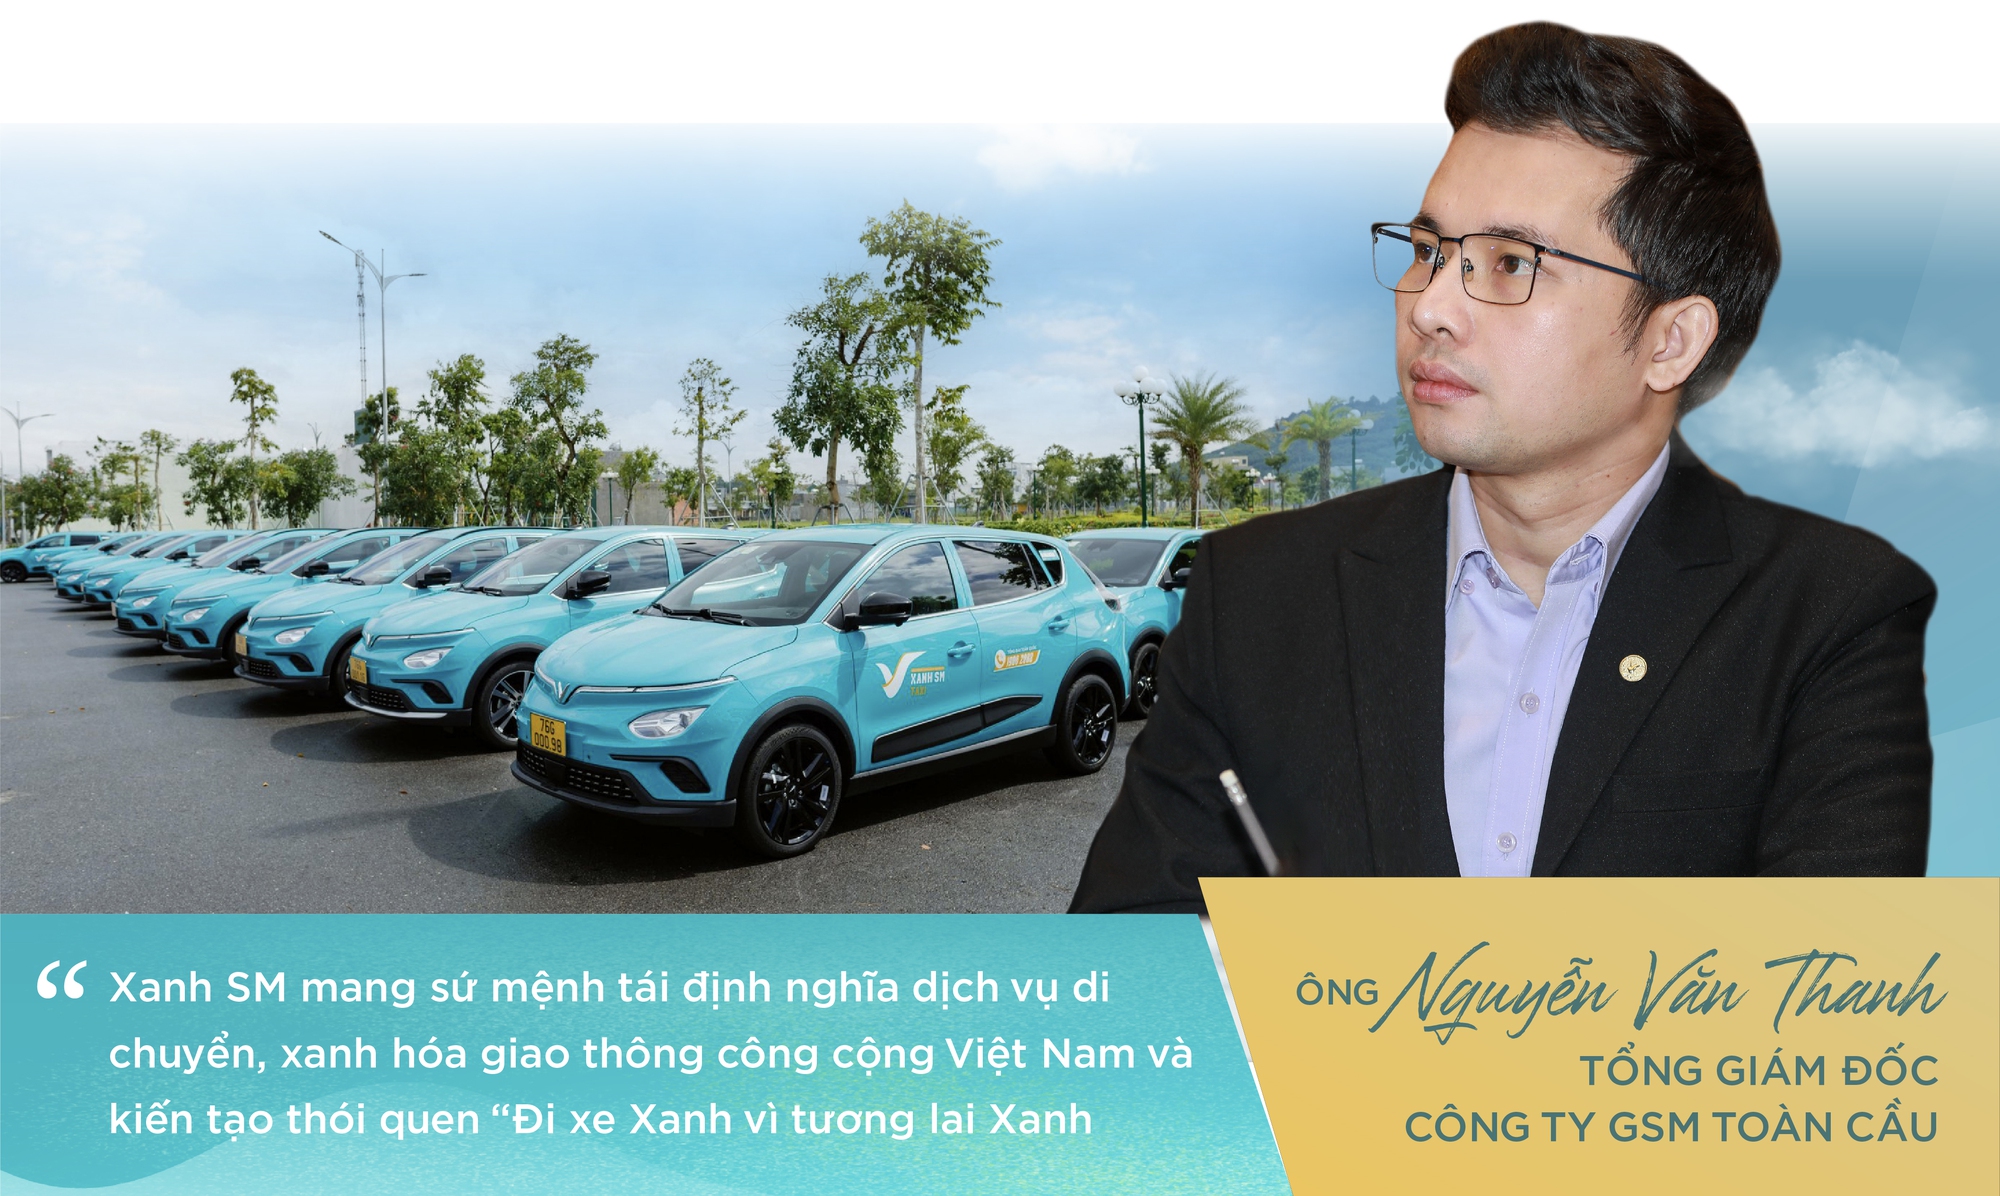 Xanh SM – thương hiệu tiên phong xây nền móng cho giao thông xanh, kiến tạo tương lai xanh tại Việt Nam - Ảnh 6.